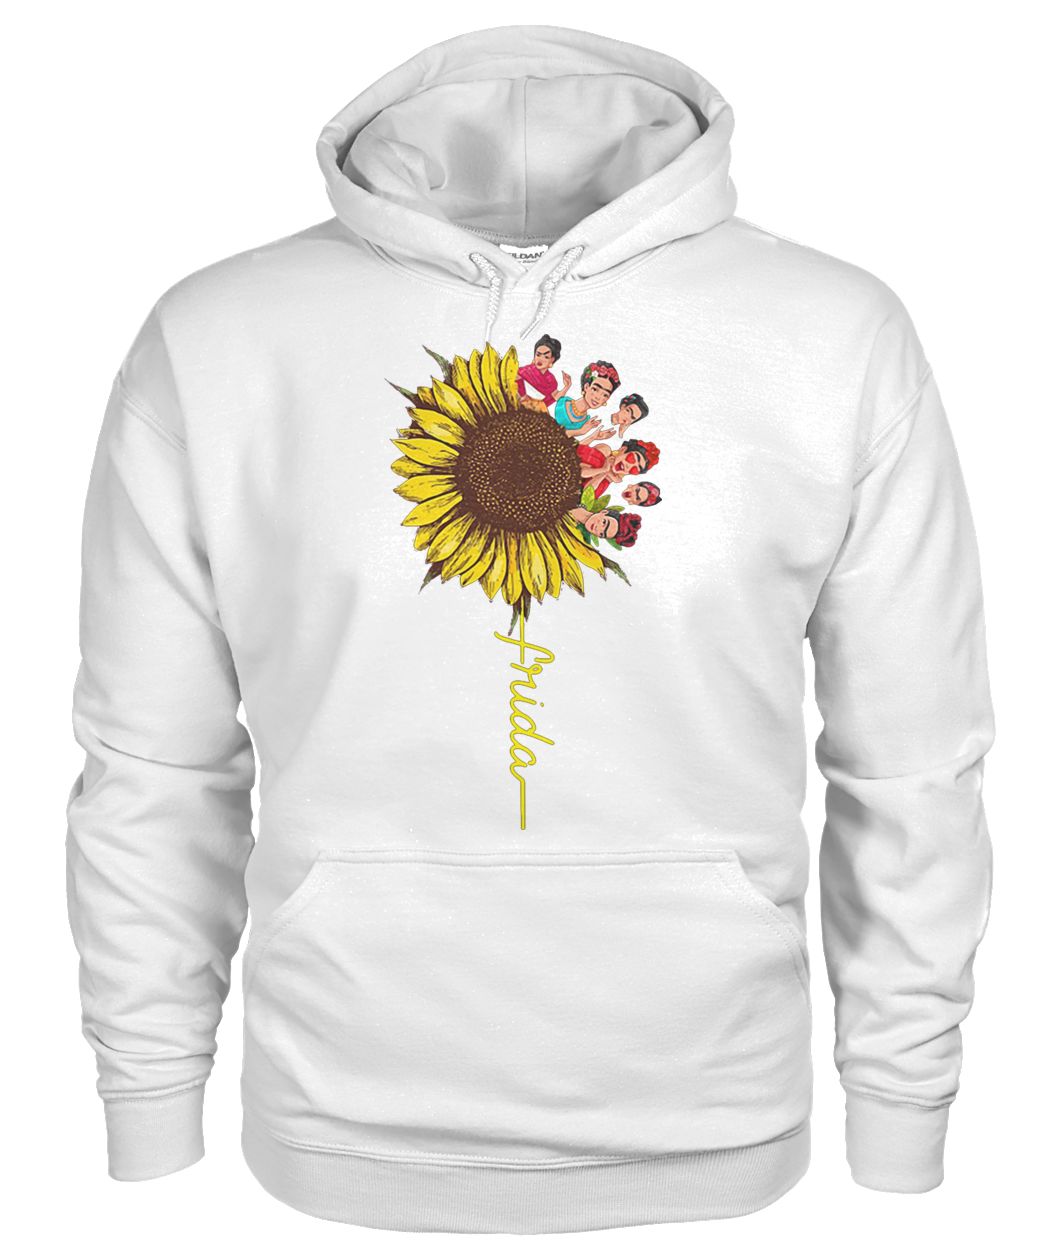 Frida kahlo sunflower gildan hoodie